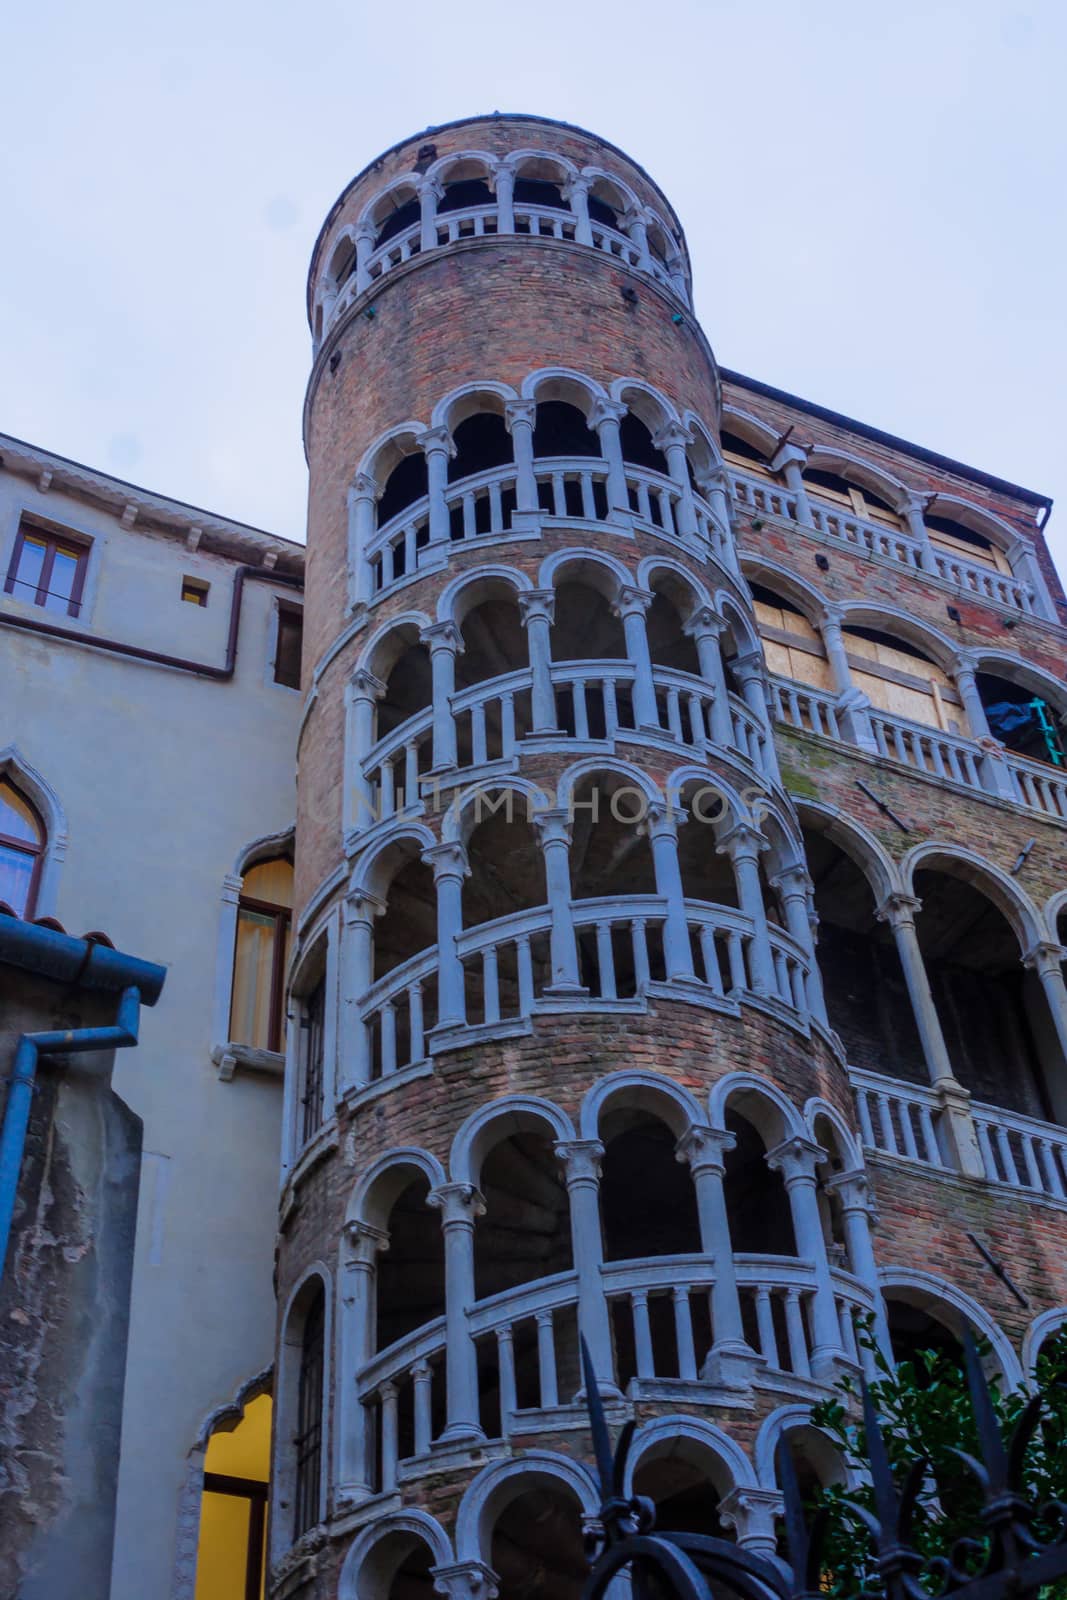 Palazzo Contarini del Bovolo, Venice by RnDmS